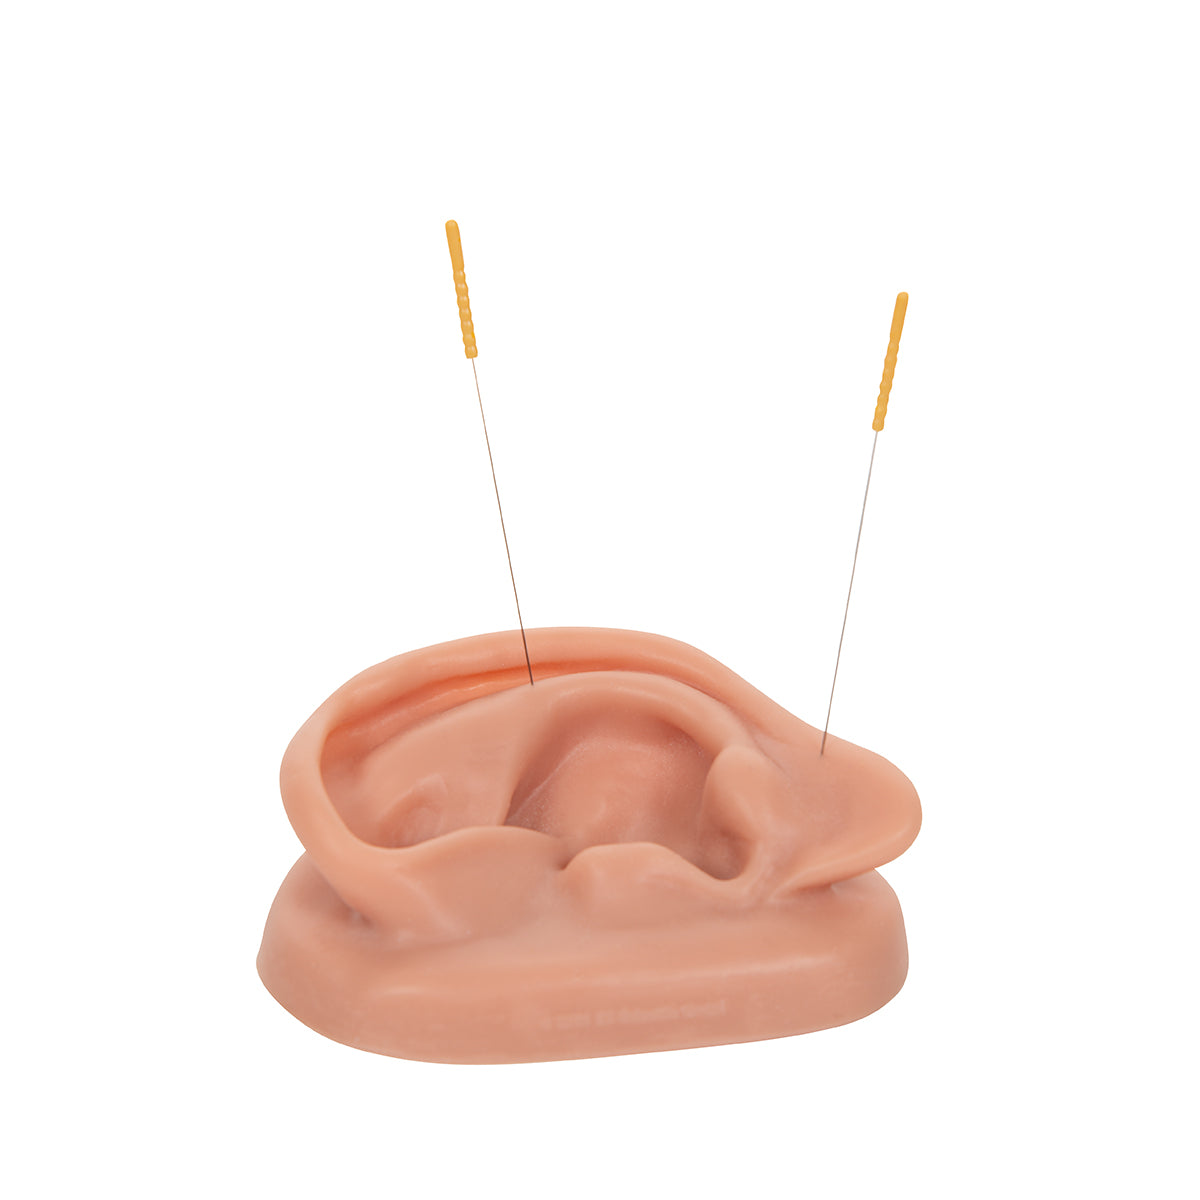 2 stk. akupunkturøre i SKINlike (tm) silicone i normalstørrelse